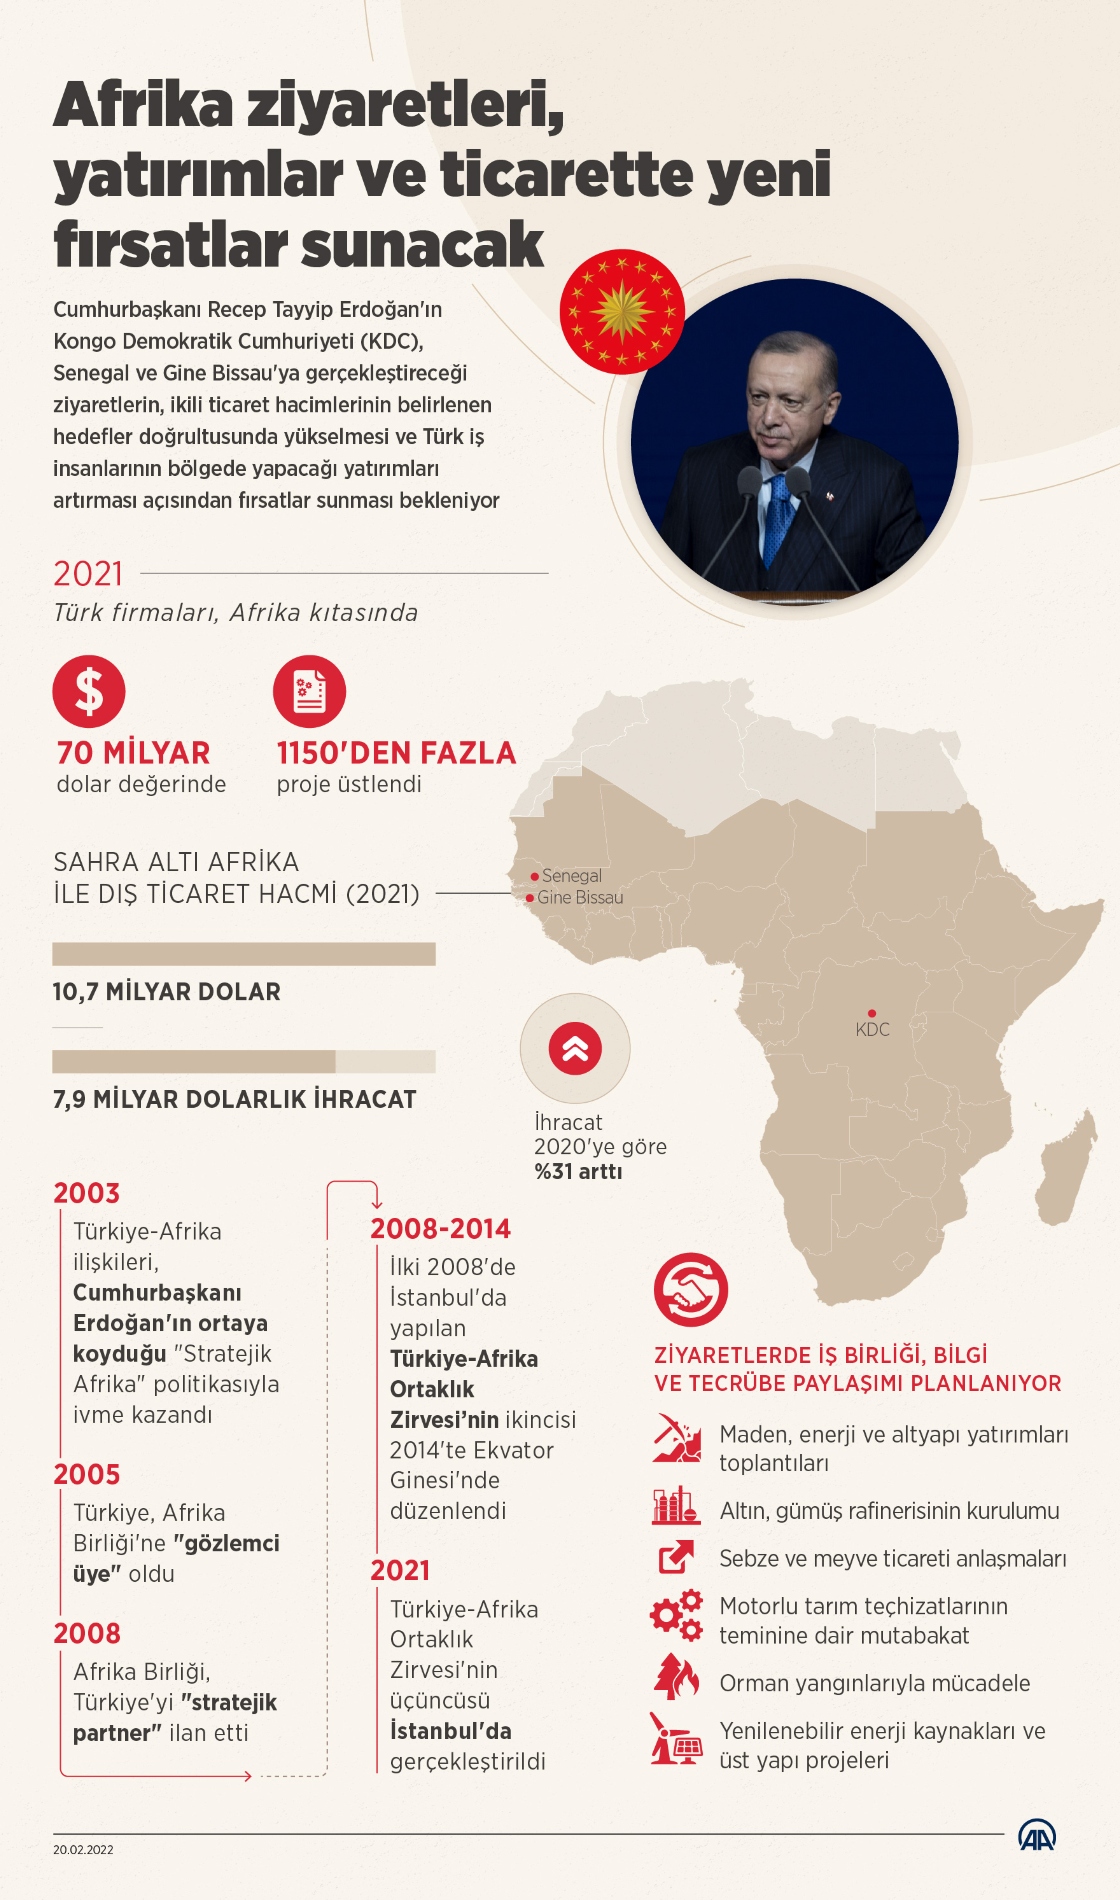 Cumhurbaşkanı Erdoğan'ın Afrika ziyaretleri, yatırımlar ve ticarette yeni fırsatlar sunacak